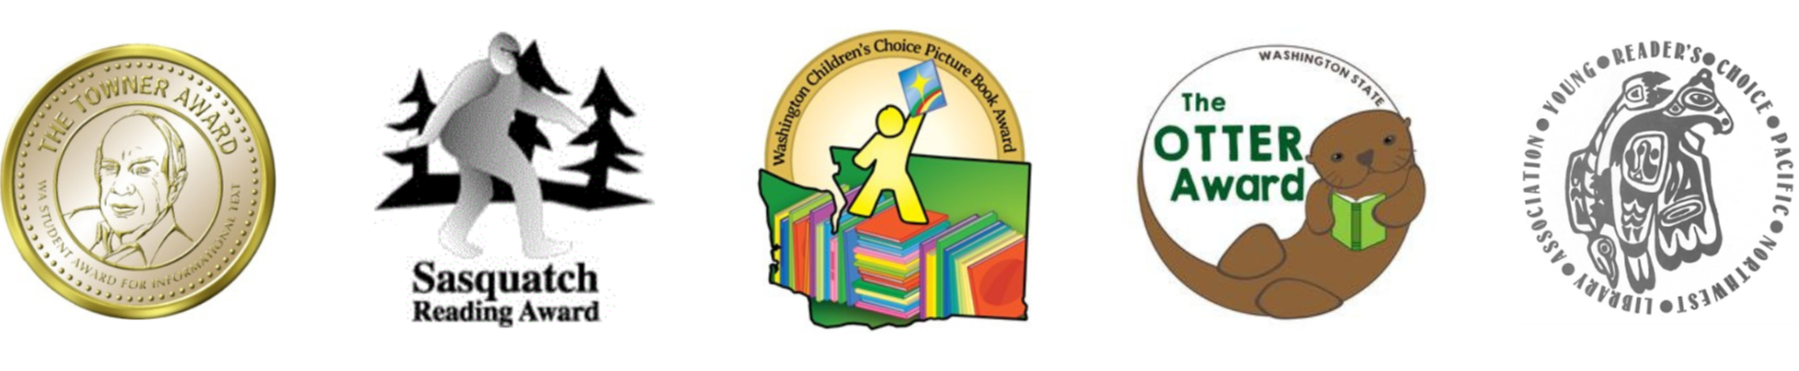 Washington Book Awards Logos